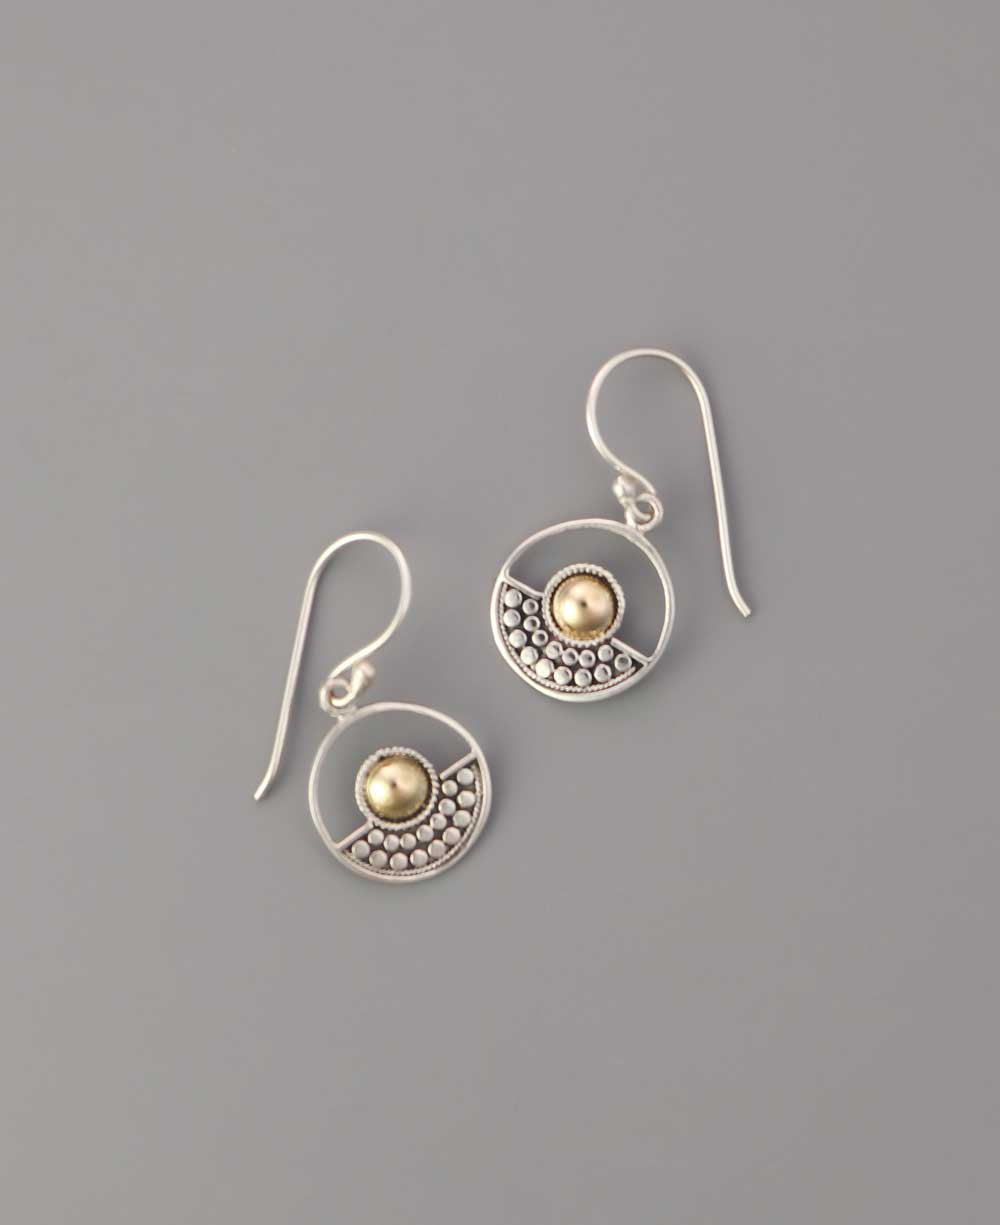 Dainty sterling silver earrings